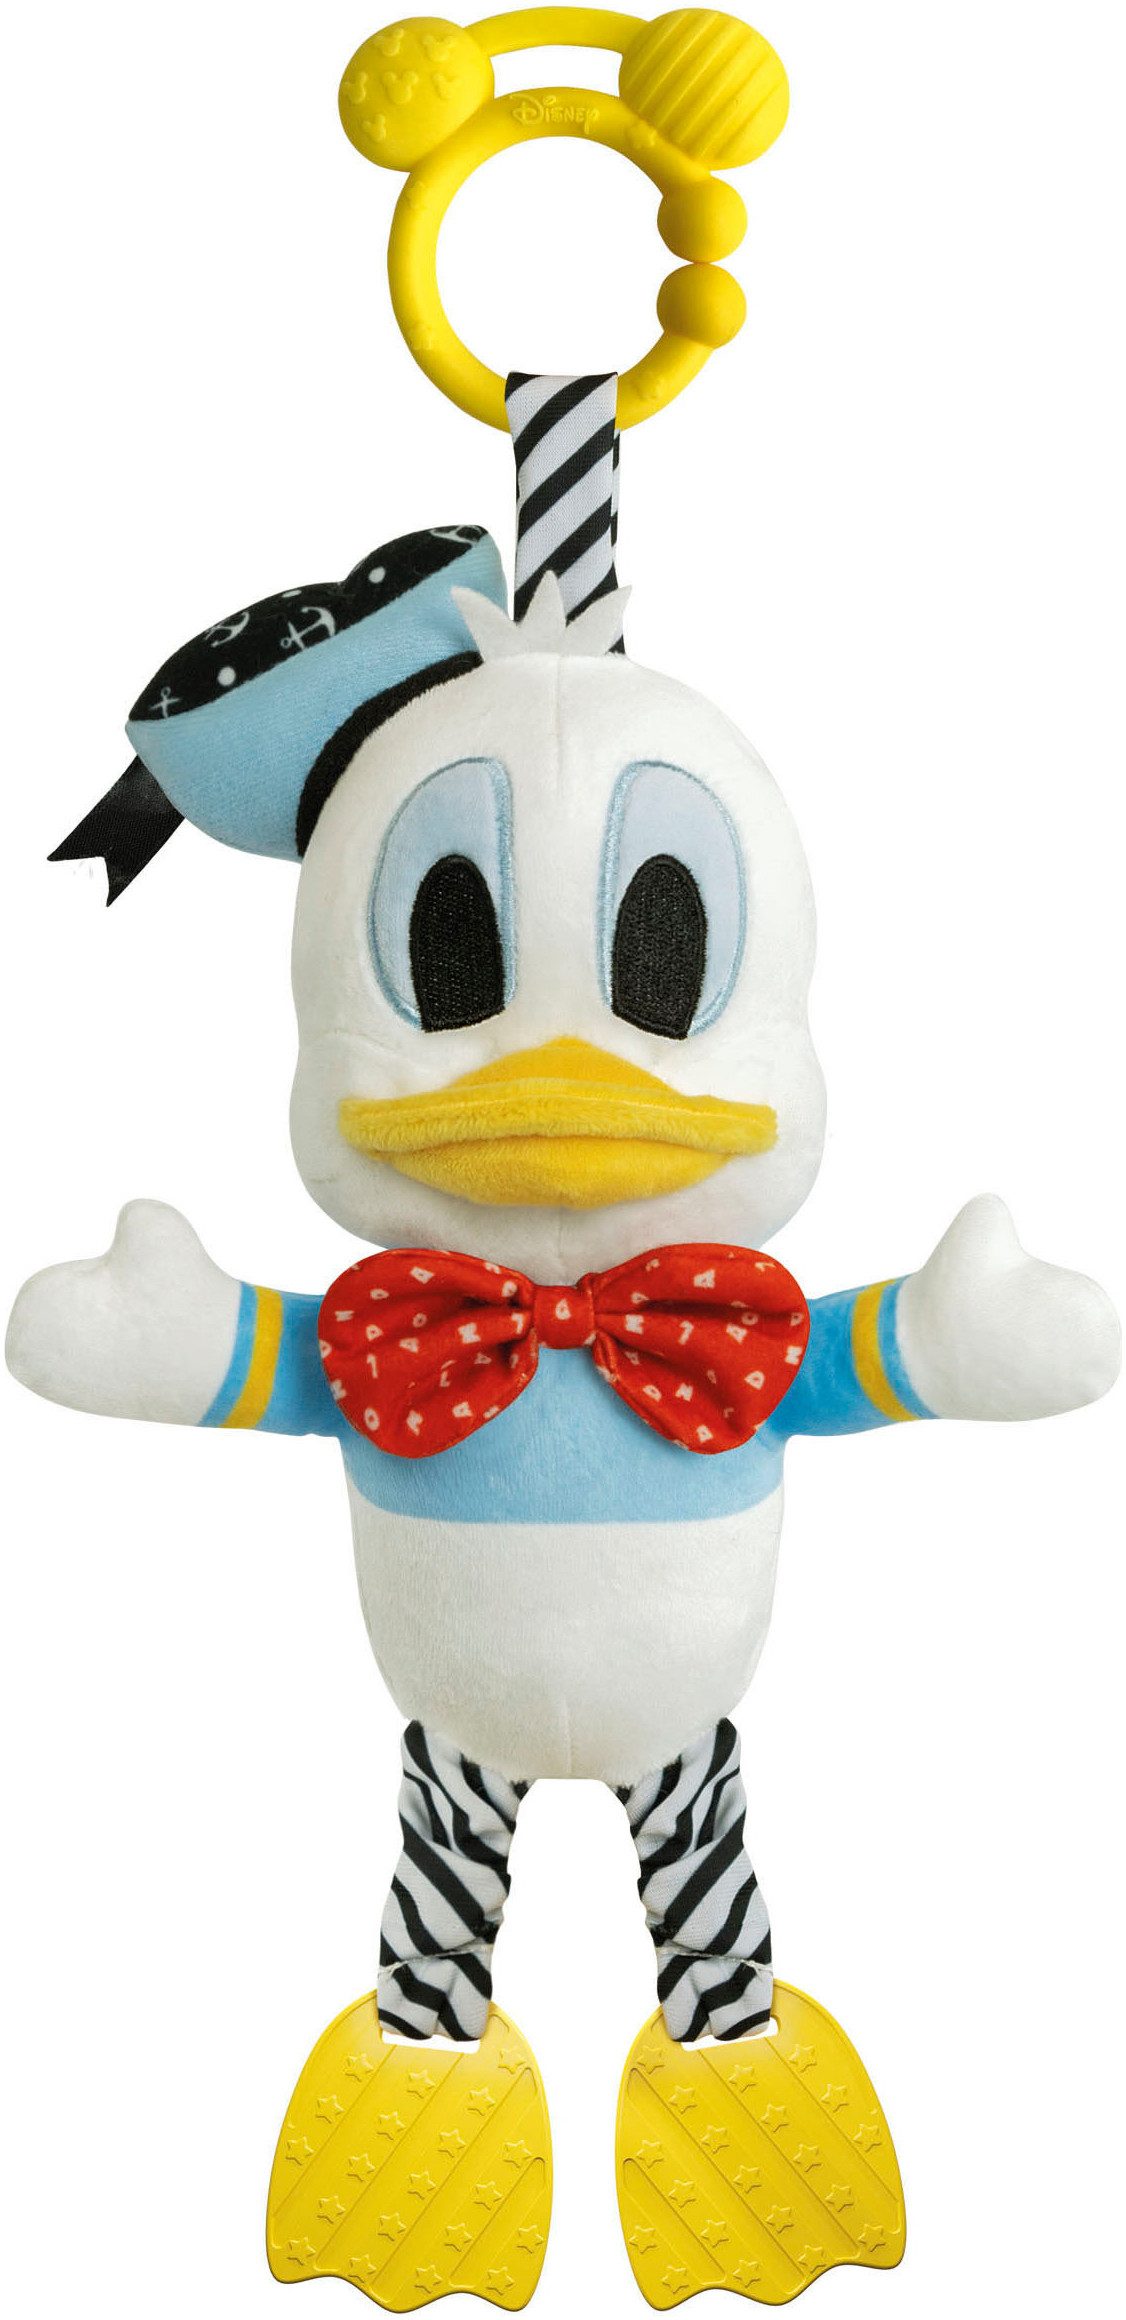 Clementoni® Plüschfigur Donald Duck, Erste Aktivitäten, Made in Europe